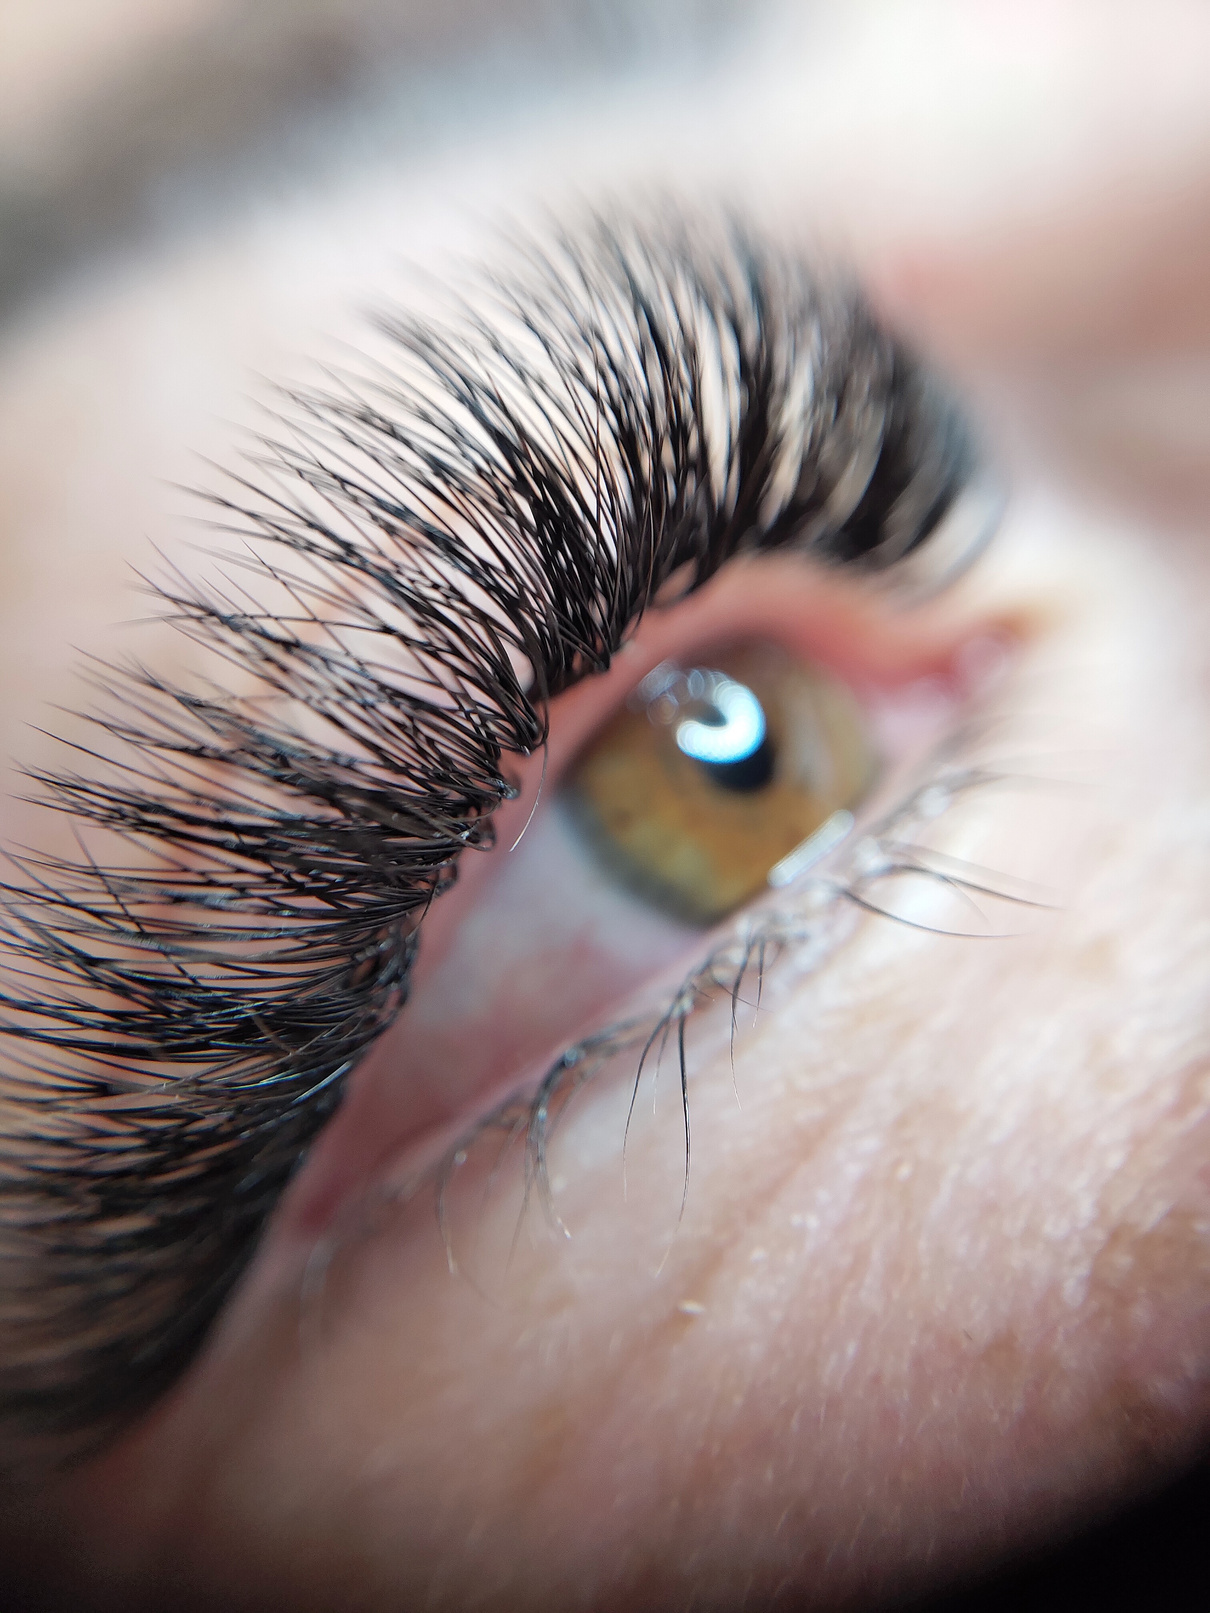 Lash Extensions in Beauty Salon Macro Eye